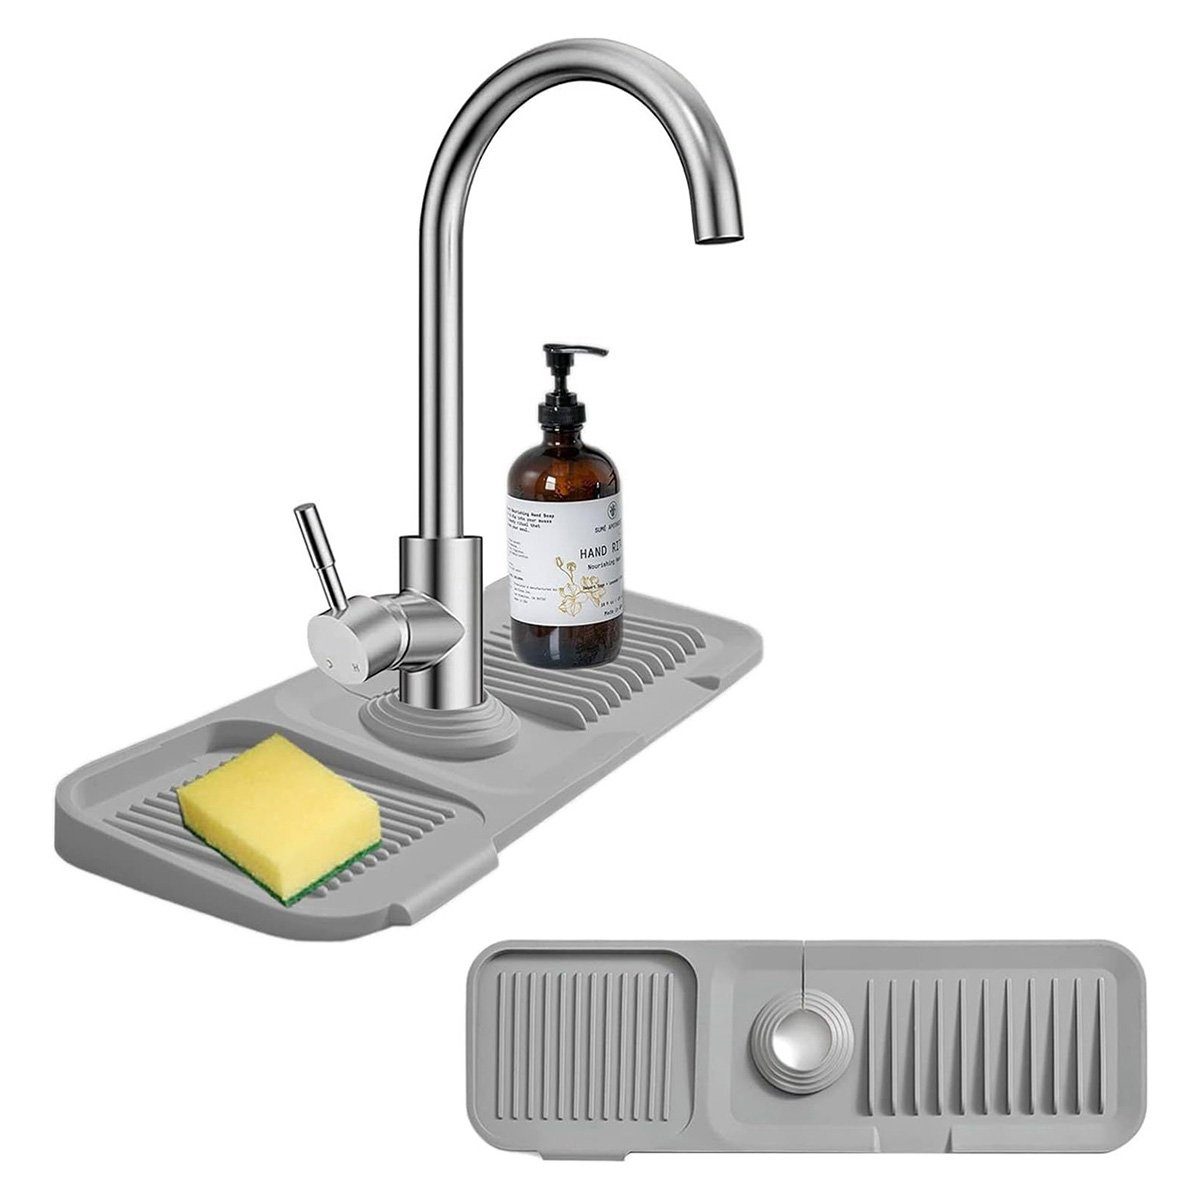 yozhiqu Spritzschutzdeckel Silikon-Wasserhahn-Ablaufpad, Leck-Pad, Anti-Spritz-Waschbecken-Pad, Halten Sie Ihre Küche trocken und sauber – blitzsauber.